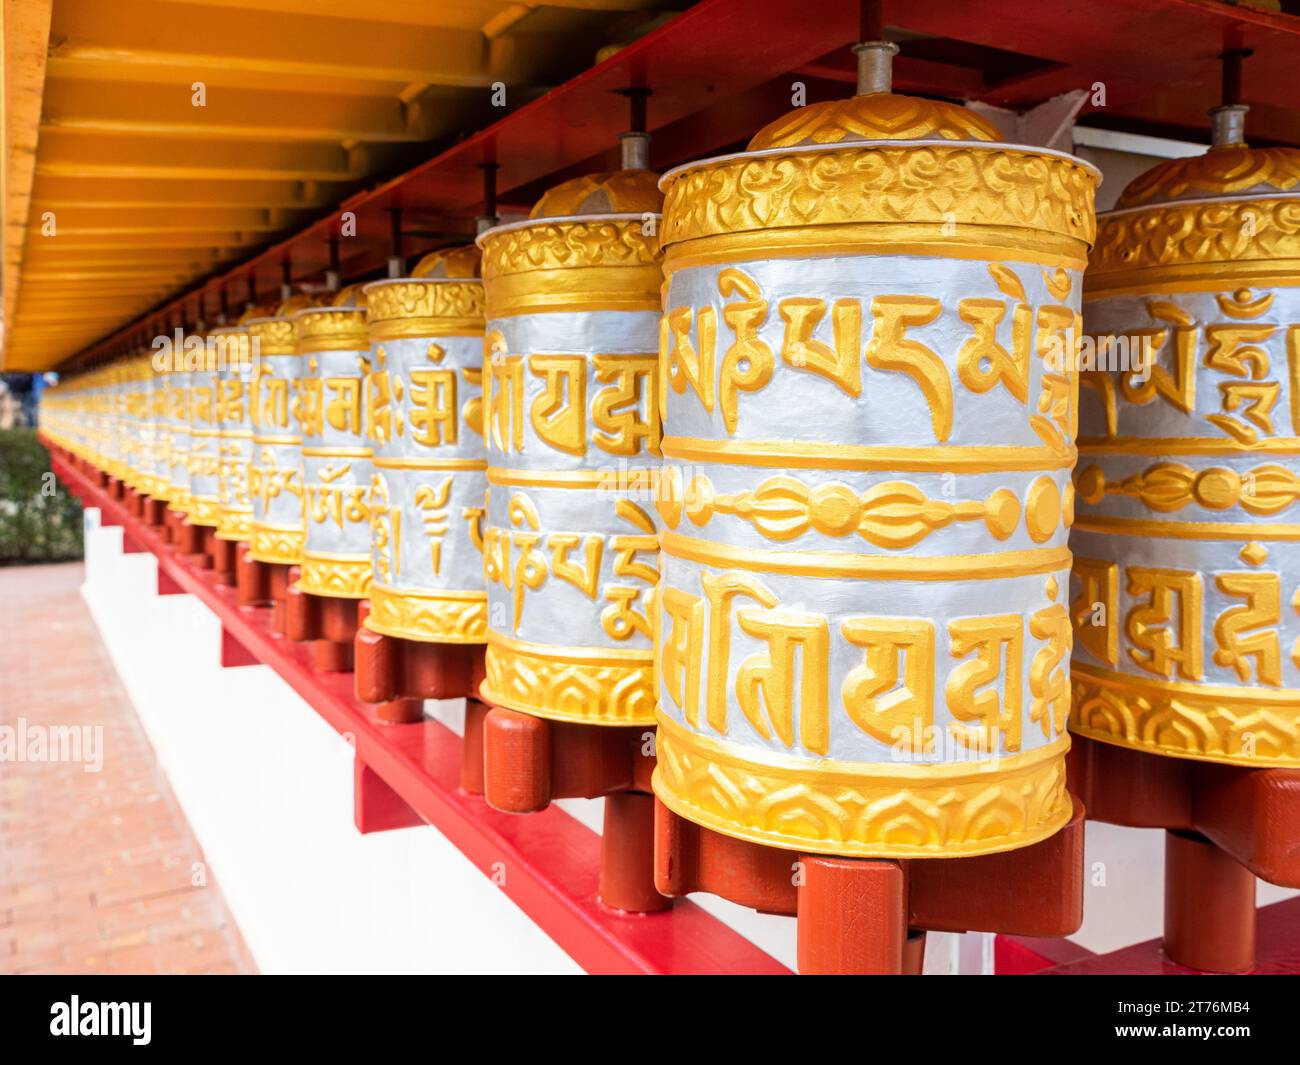 Eine Reihe kunstvoll verzierter goldener und silberner Gebetsmühle, die sich an der Wand eines buddhistischen Tempels aneinander Reihen Stockfoto